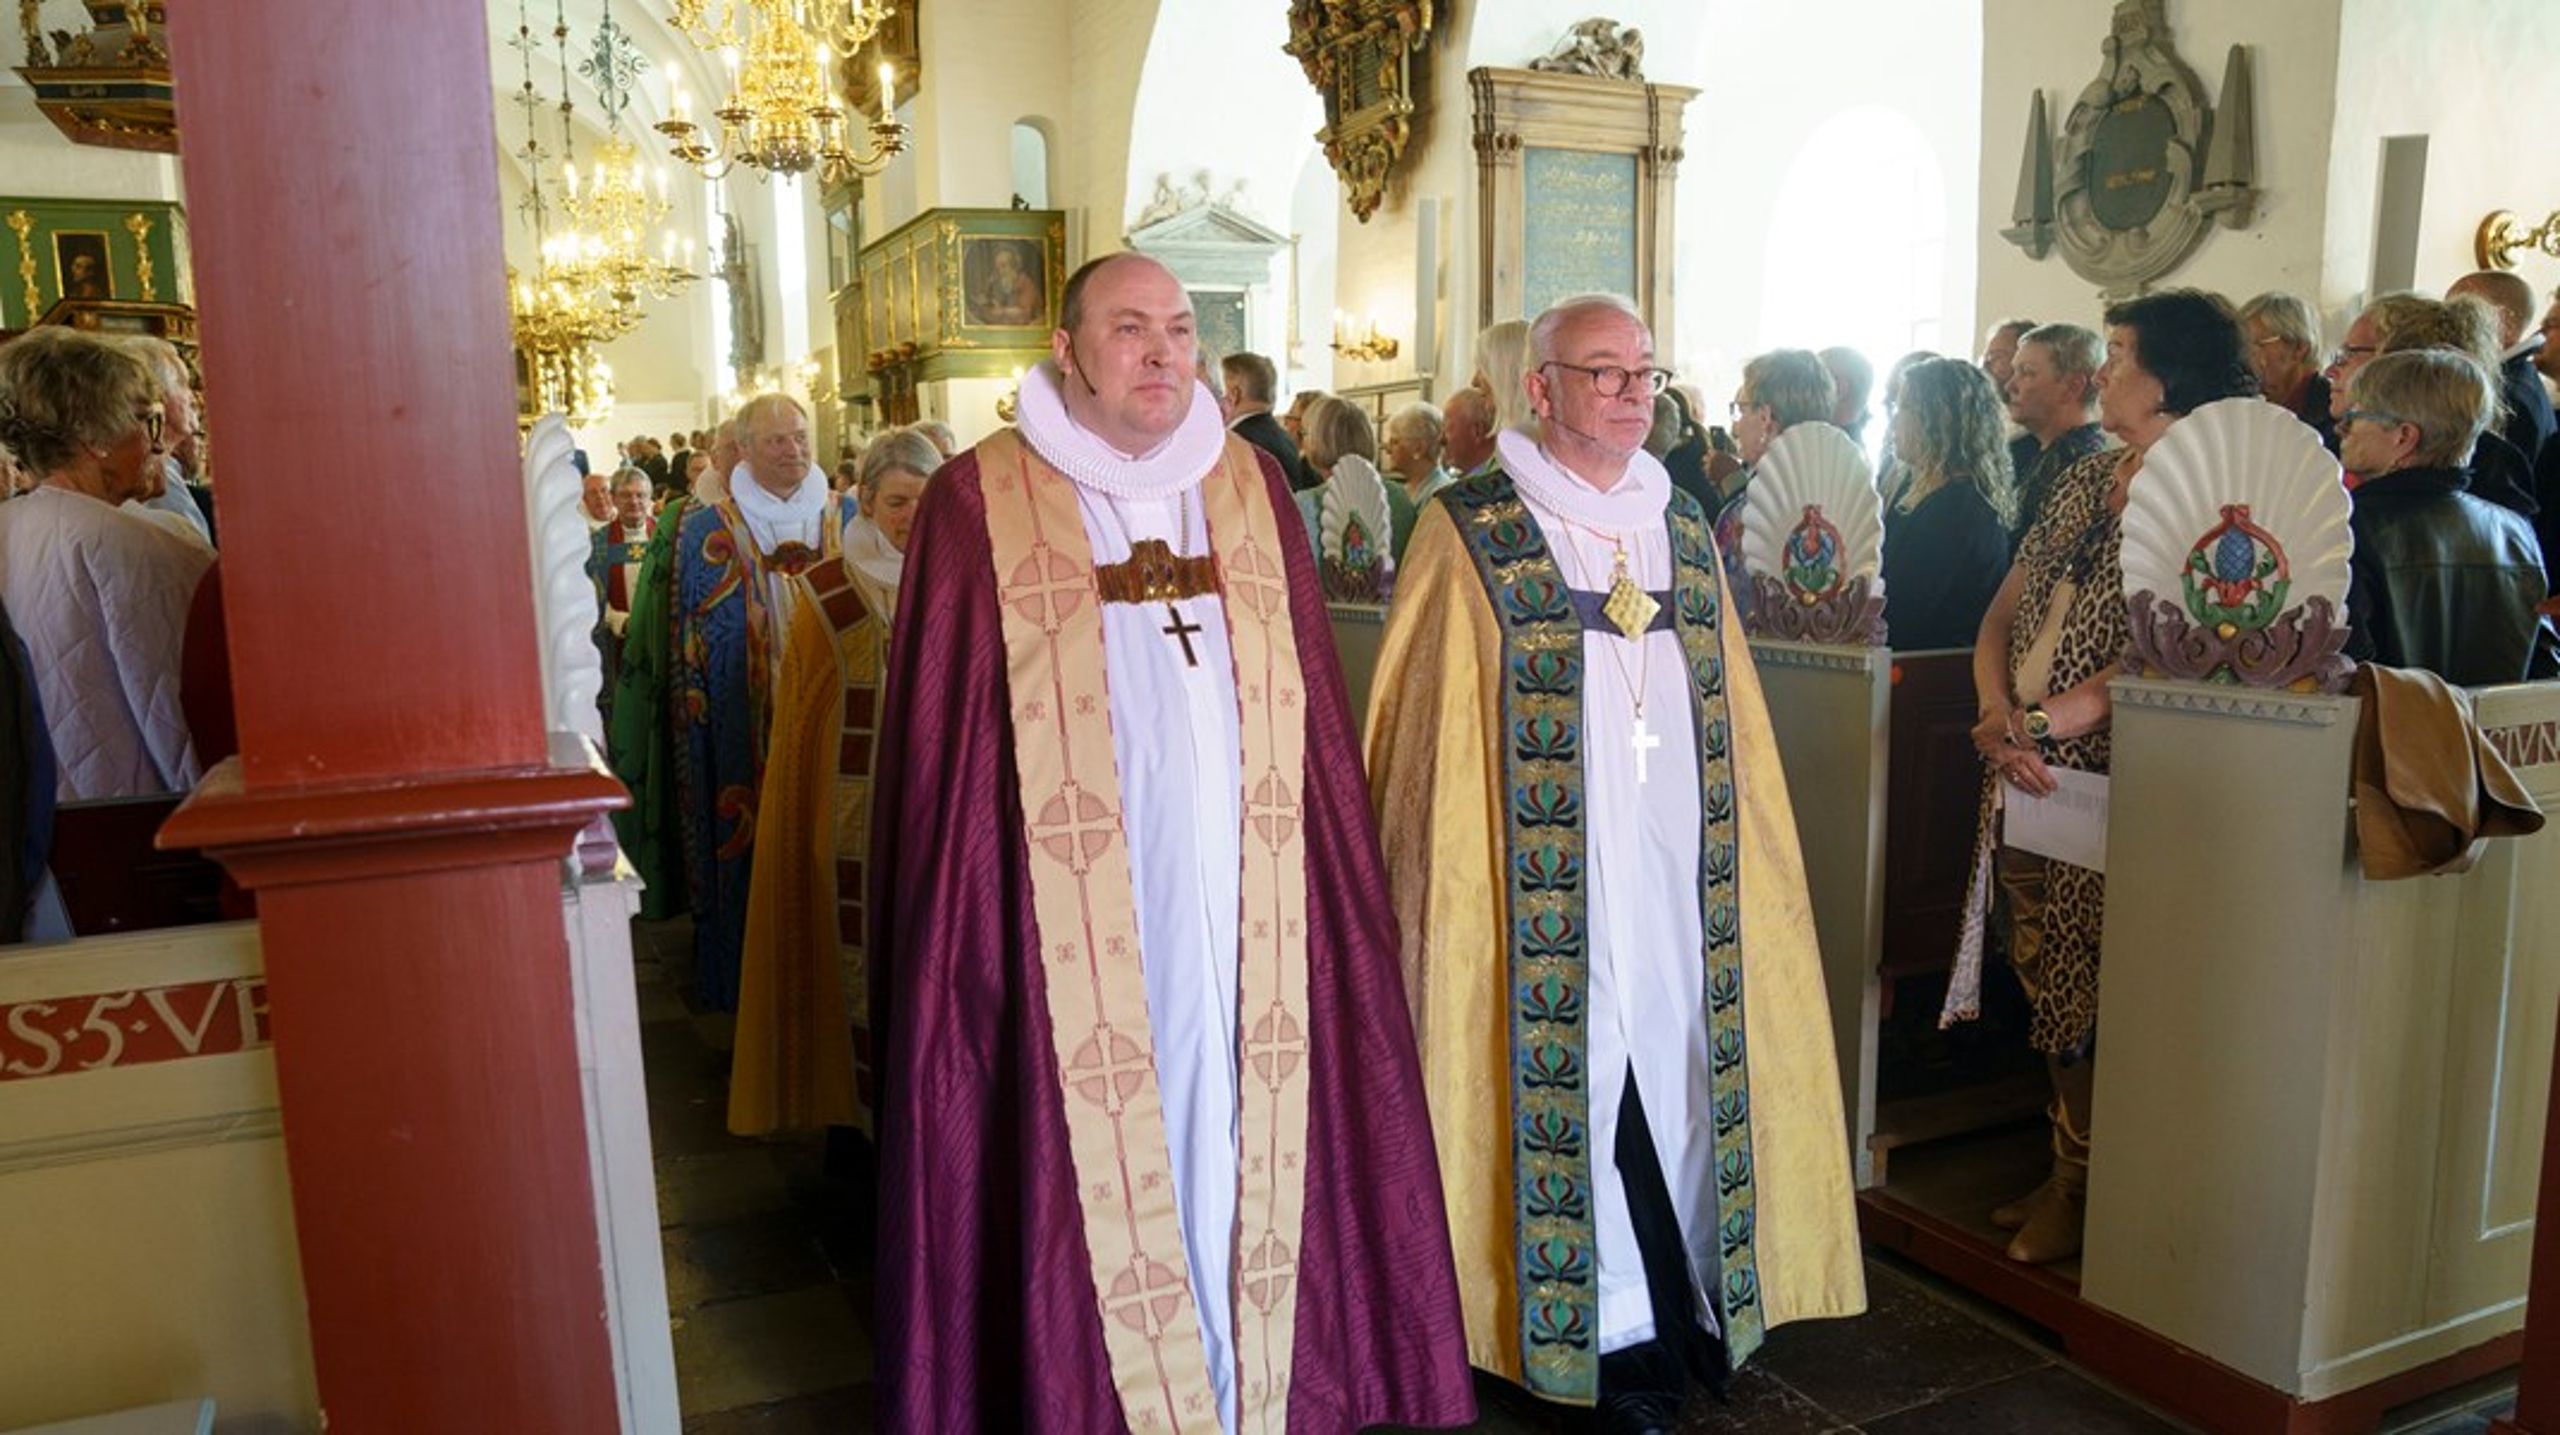 Thomas Reinholdt Rasmussen (tv.) og Peter Skov-Jakobsen (th.) er to af de biskopper, der er uforstående over for kirkeministerens kritik. Arkivfoto.